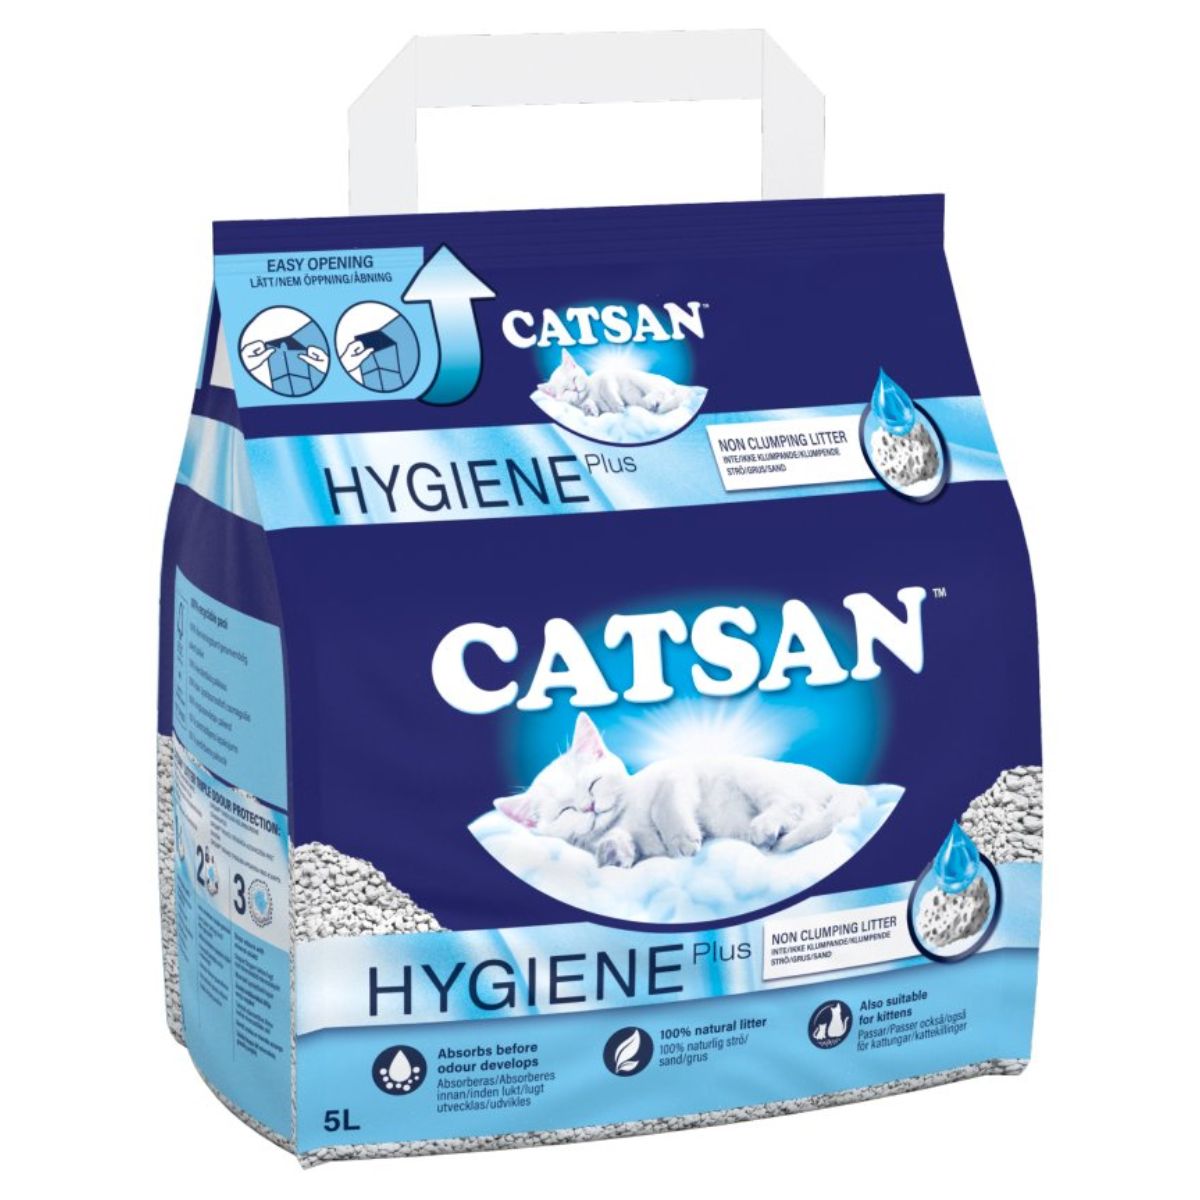 Catsan hygiene cat litter.